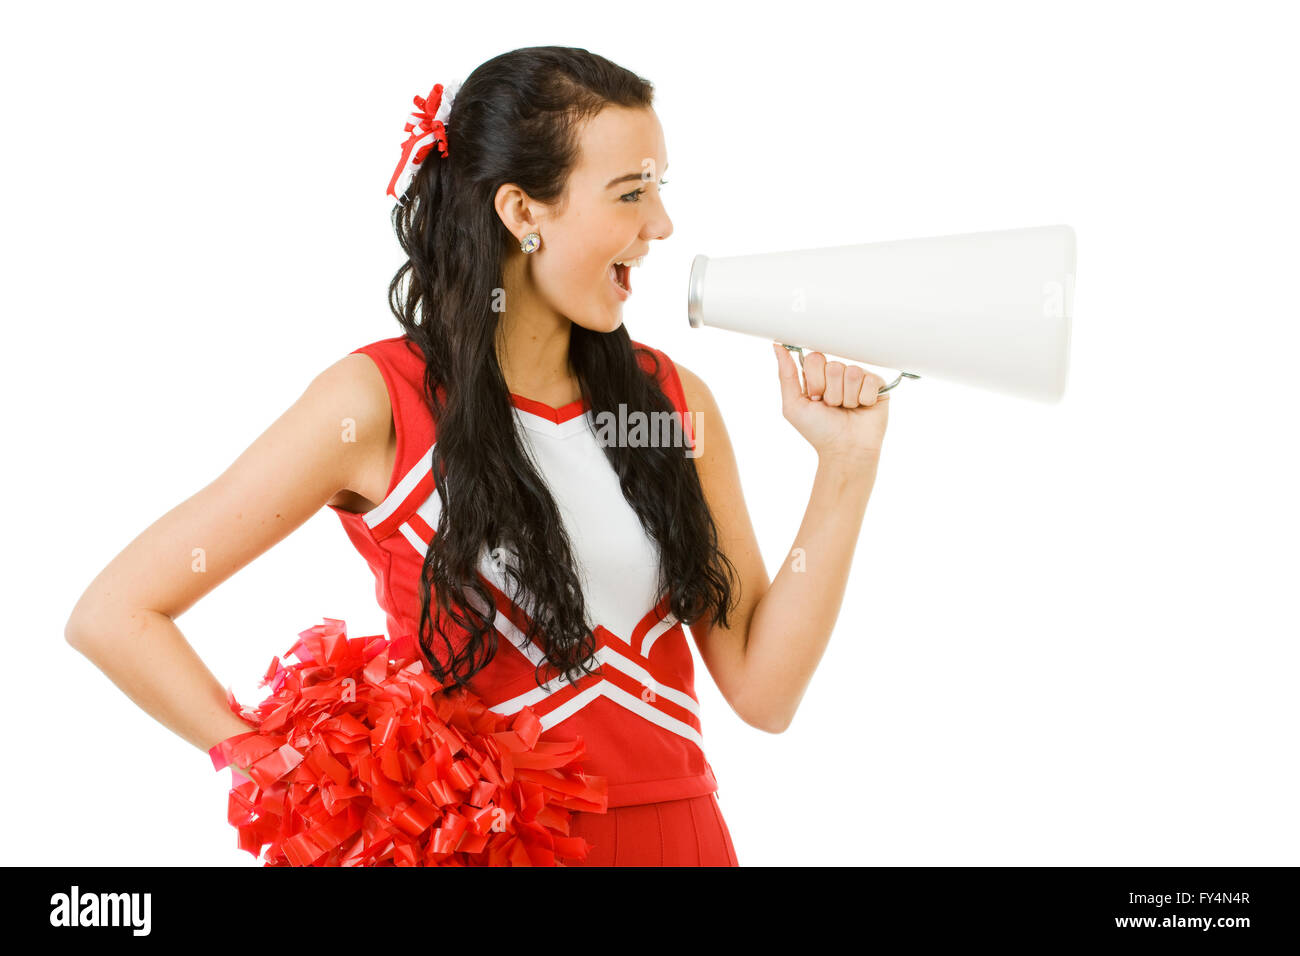 Süße Frau wie eine amerikanische Sportarten Cheerleader in roten und weißen Outfit.  Isoliert auf weißem Hintergrund. Stockfoto